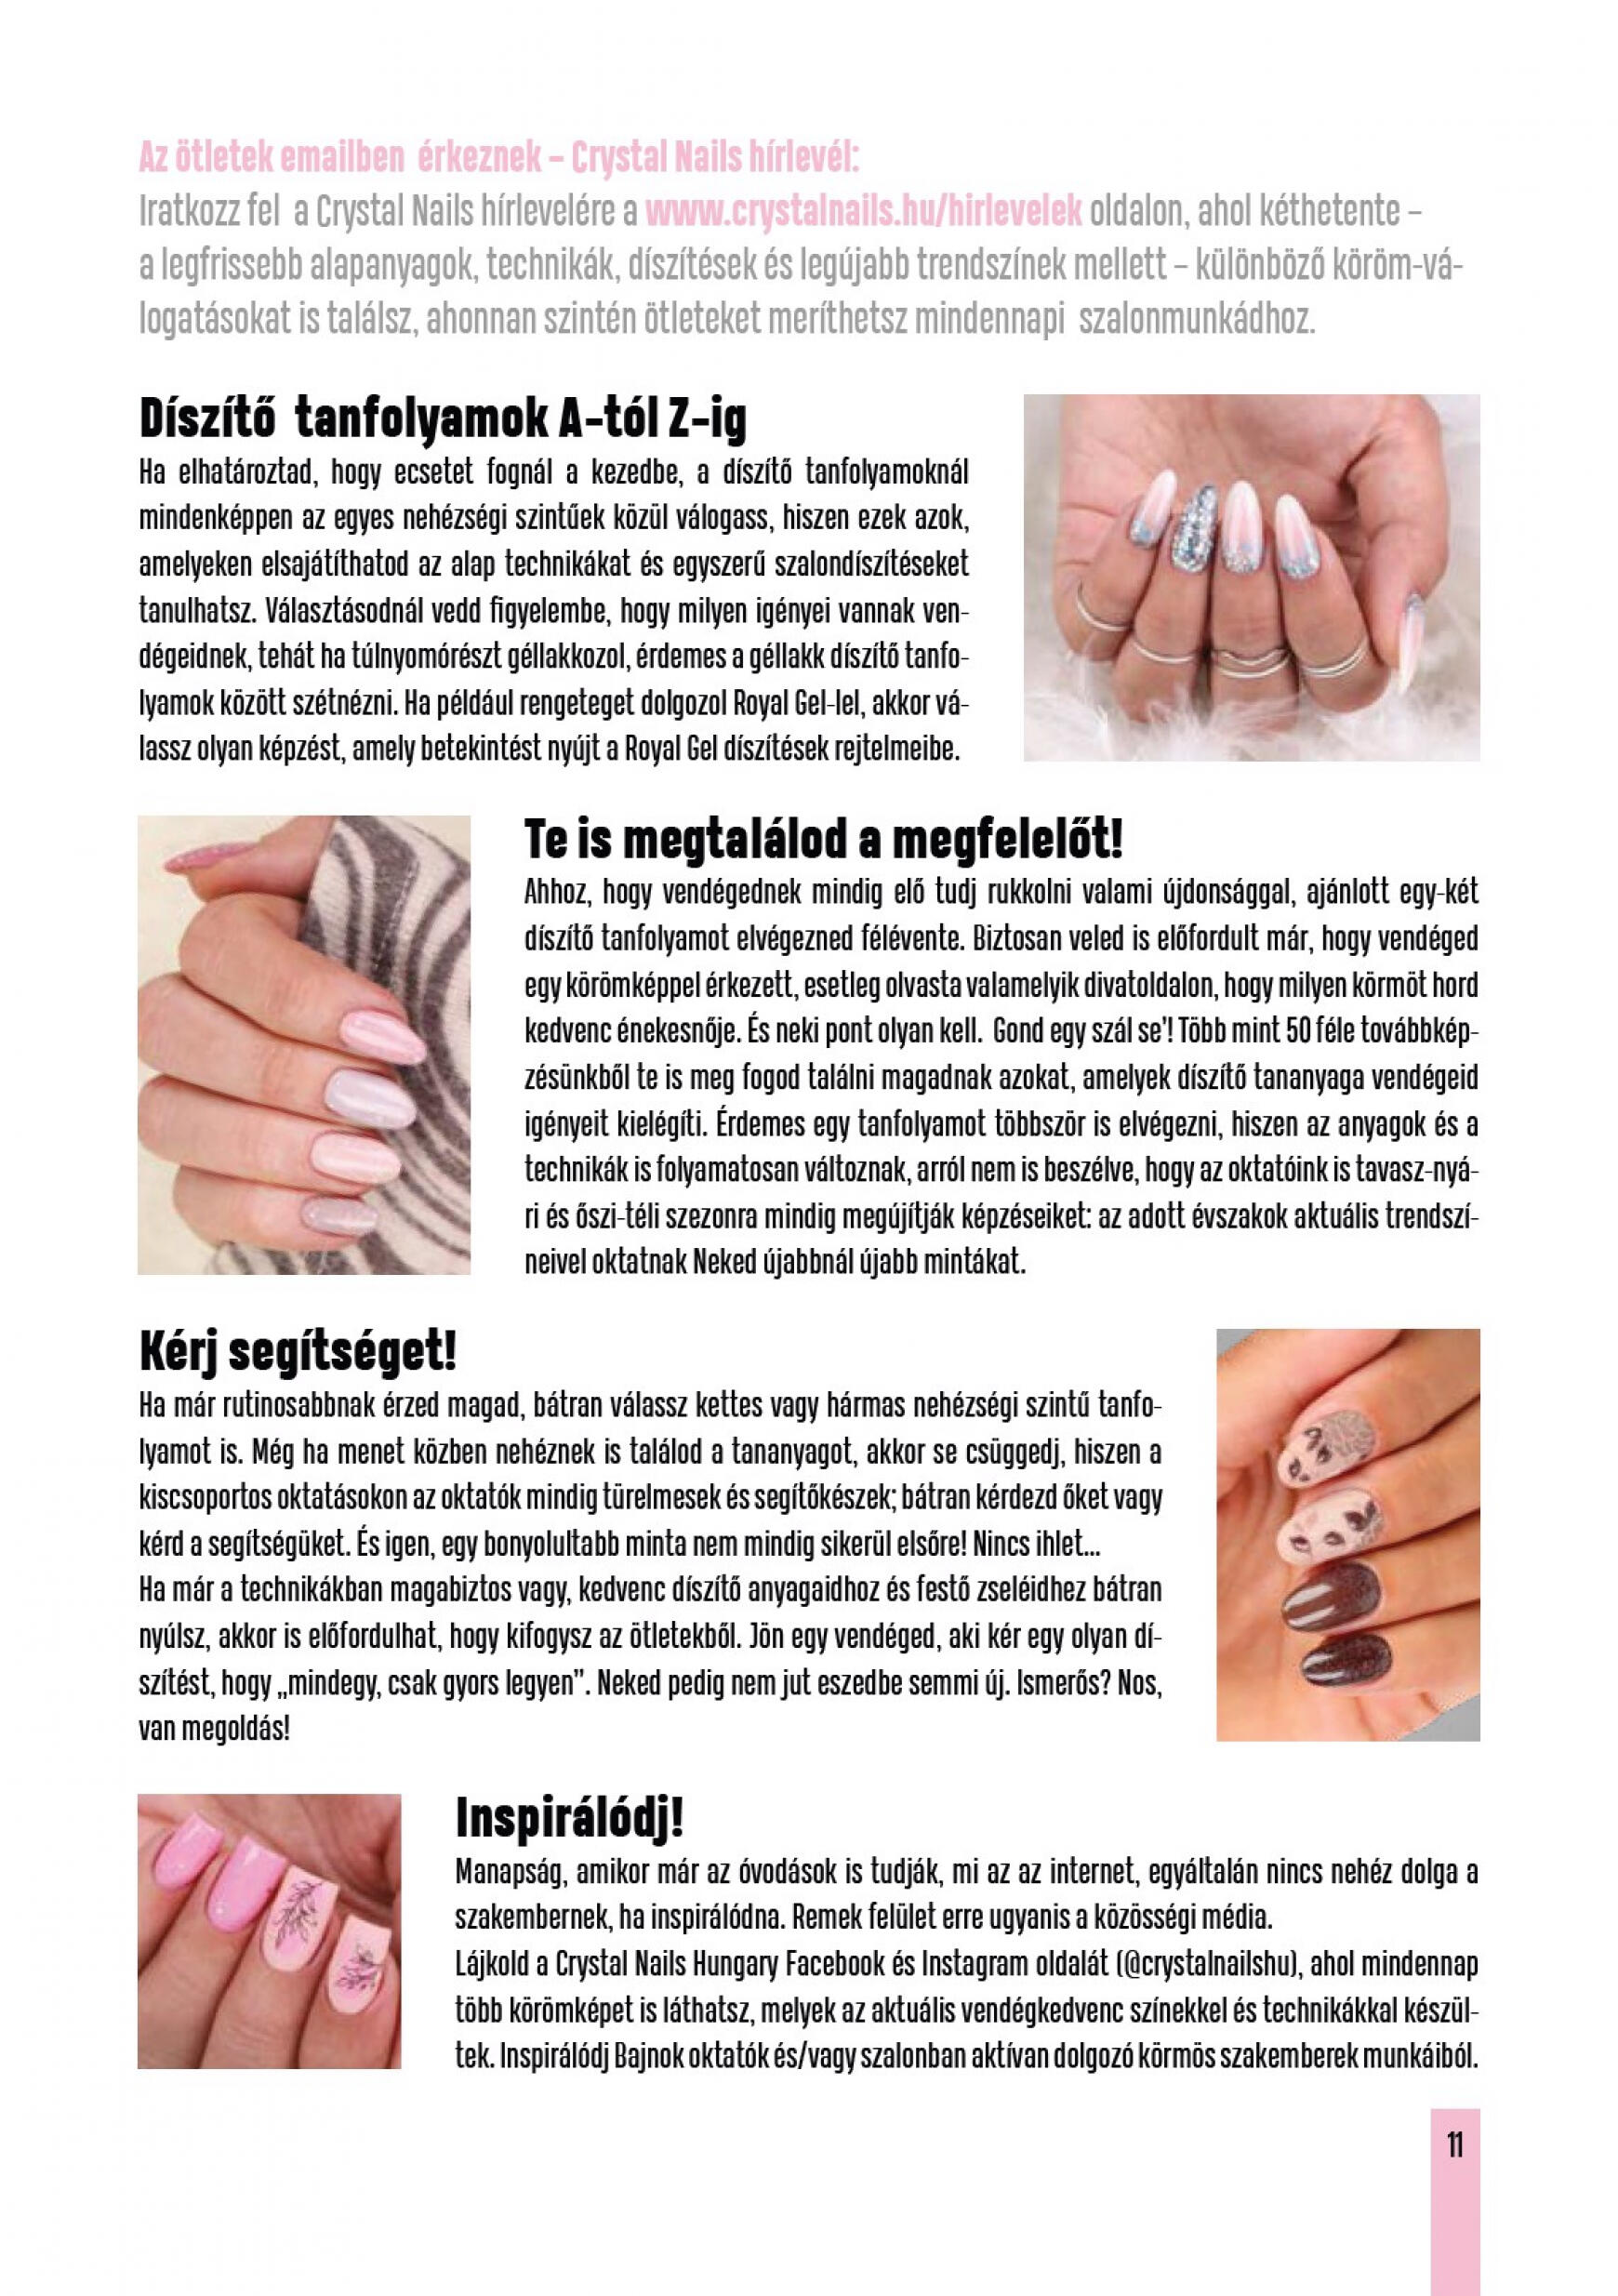 crystal-nails - Aktuális újság Crystal Nails - Tavasz/Nyár 05.01. - 08.31. - page: 11